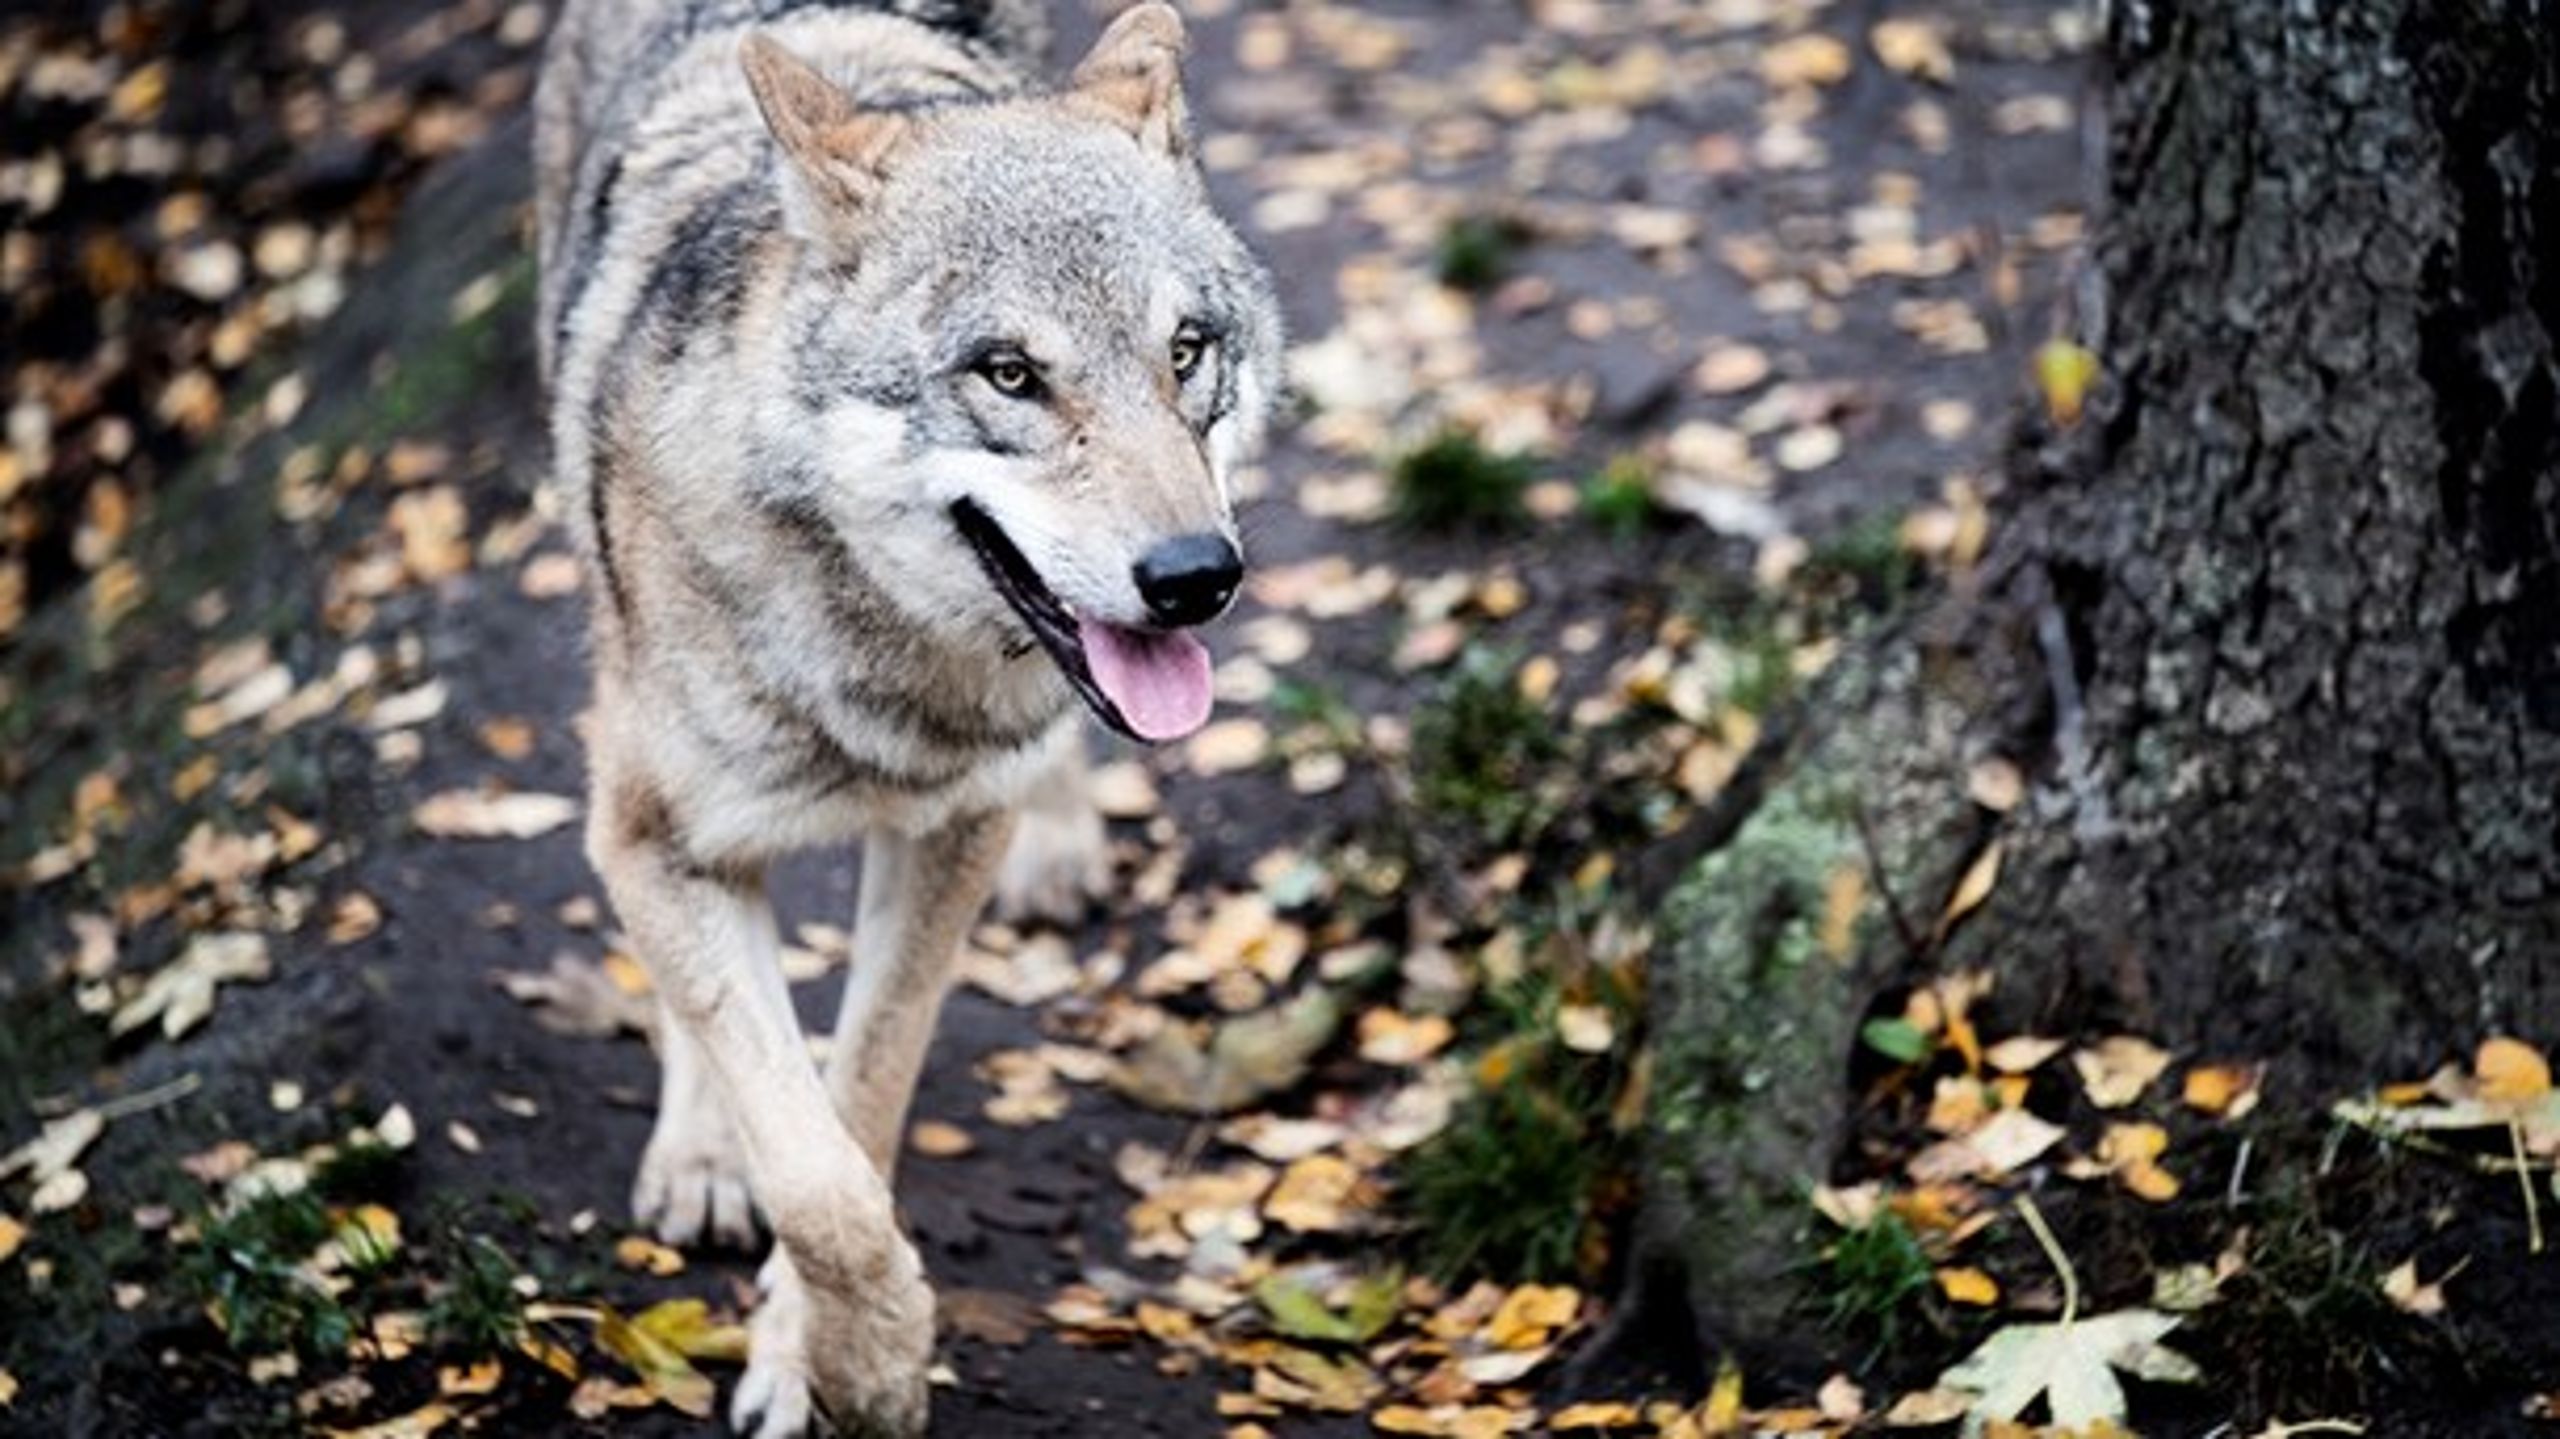 Selvom ulven får stor opmærksomhed, har ulven reelt lille betydning for den danske natur, forklarer Peter Sunde.&nbsp;